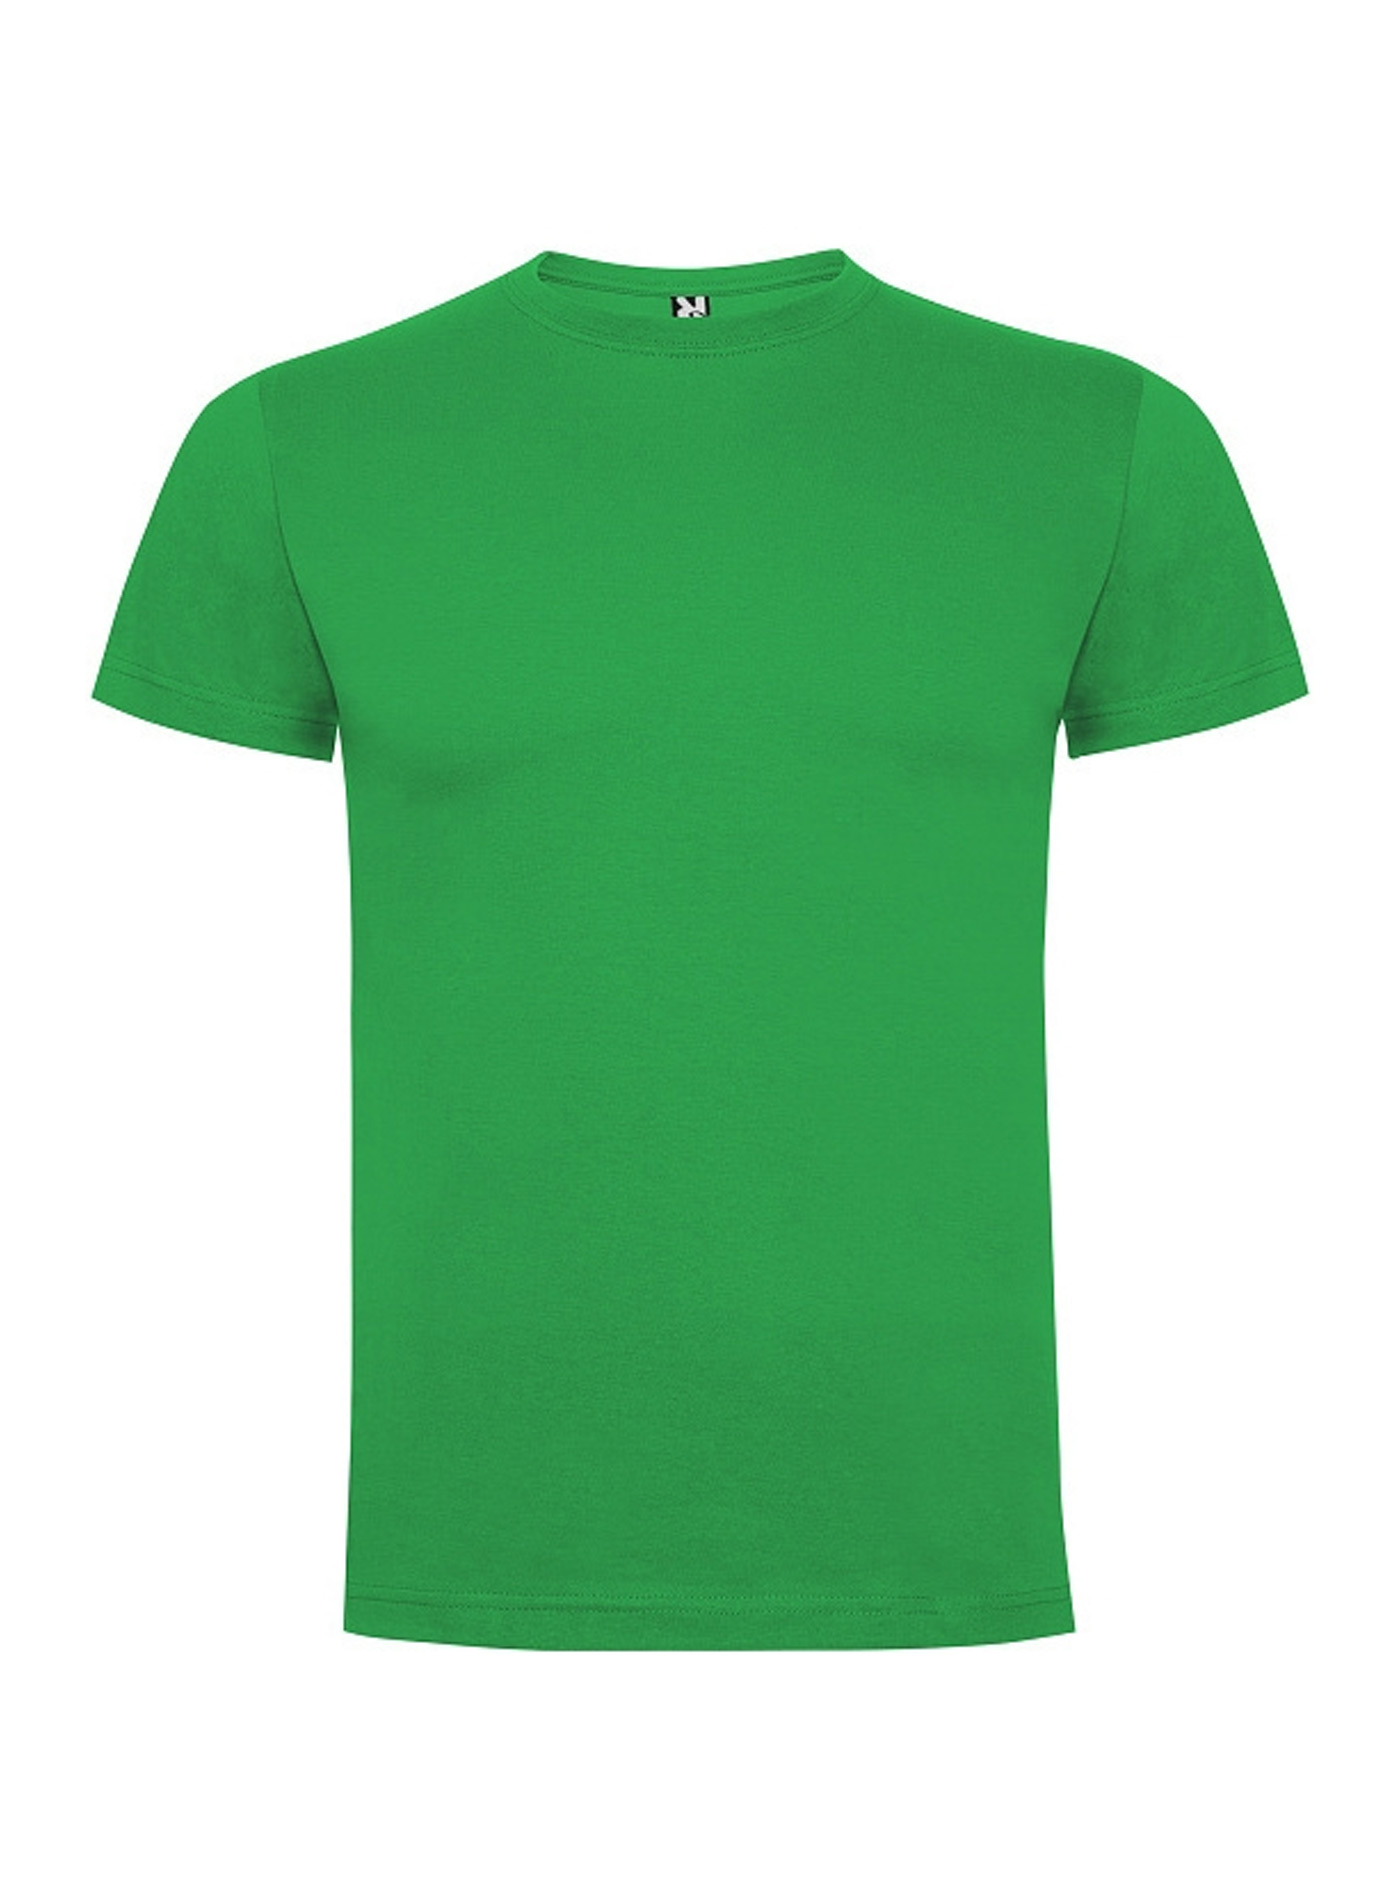 Pánské tričko Roly Dogo premium - Irská zelená XL